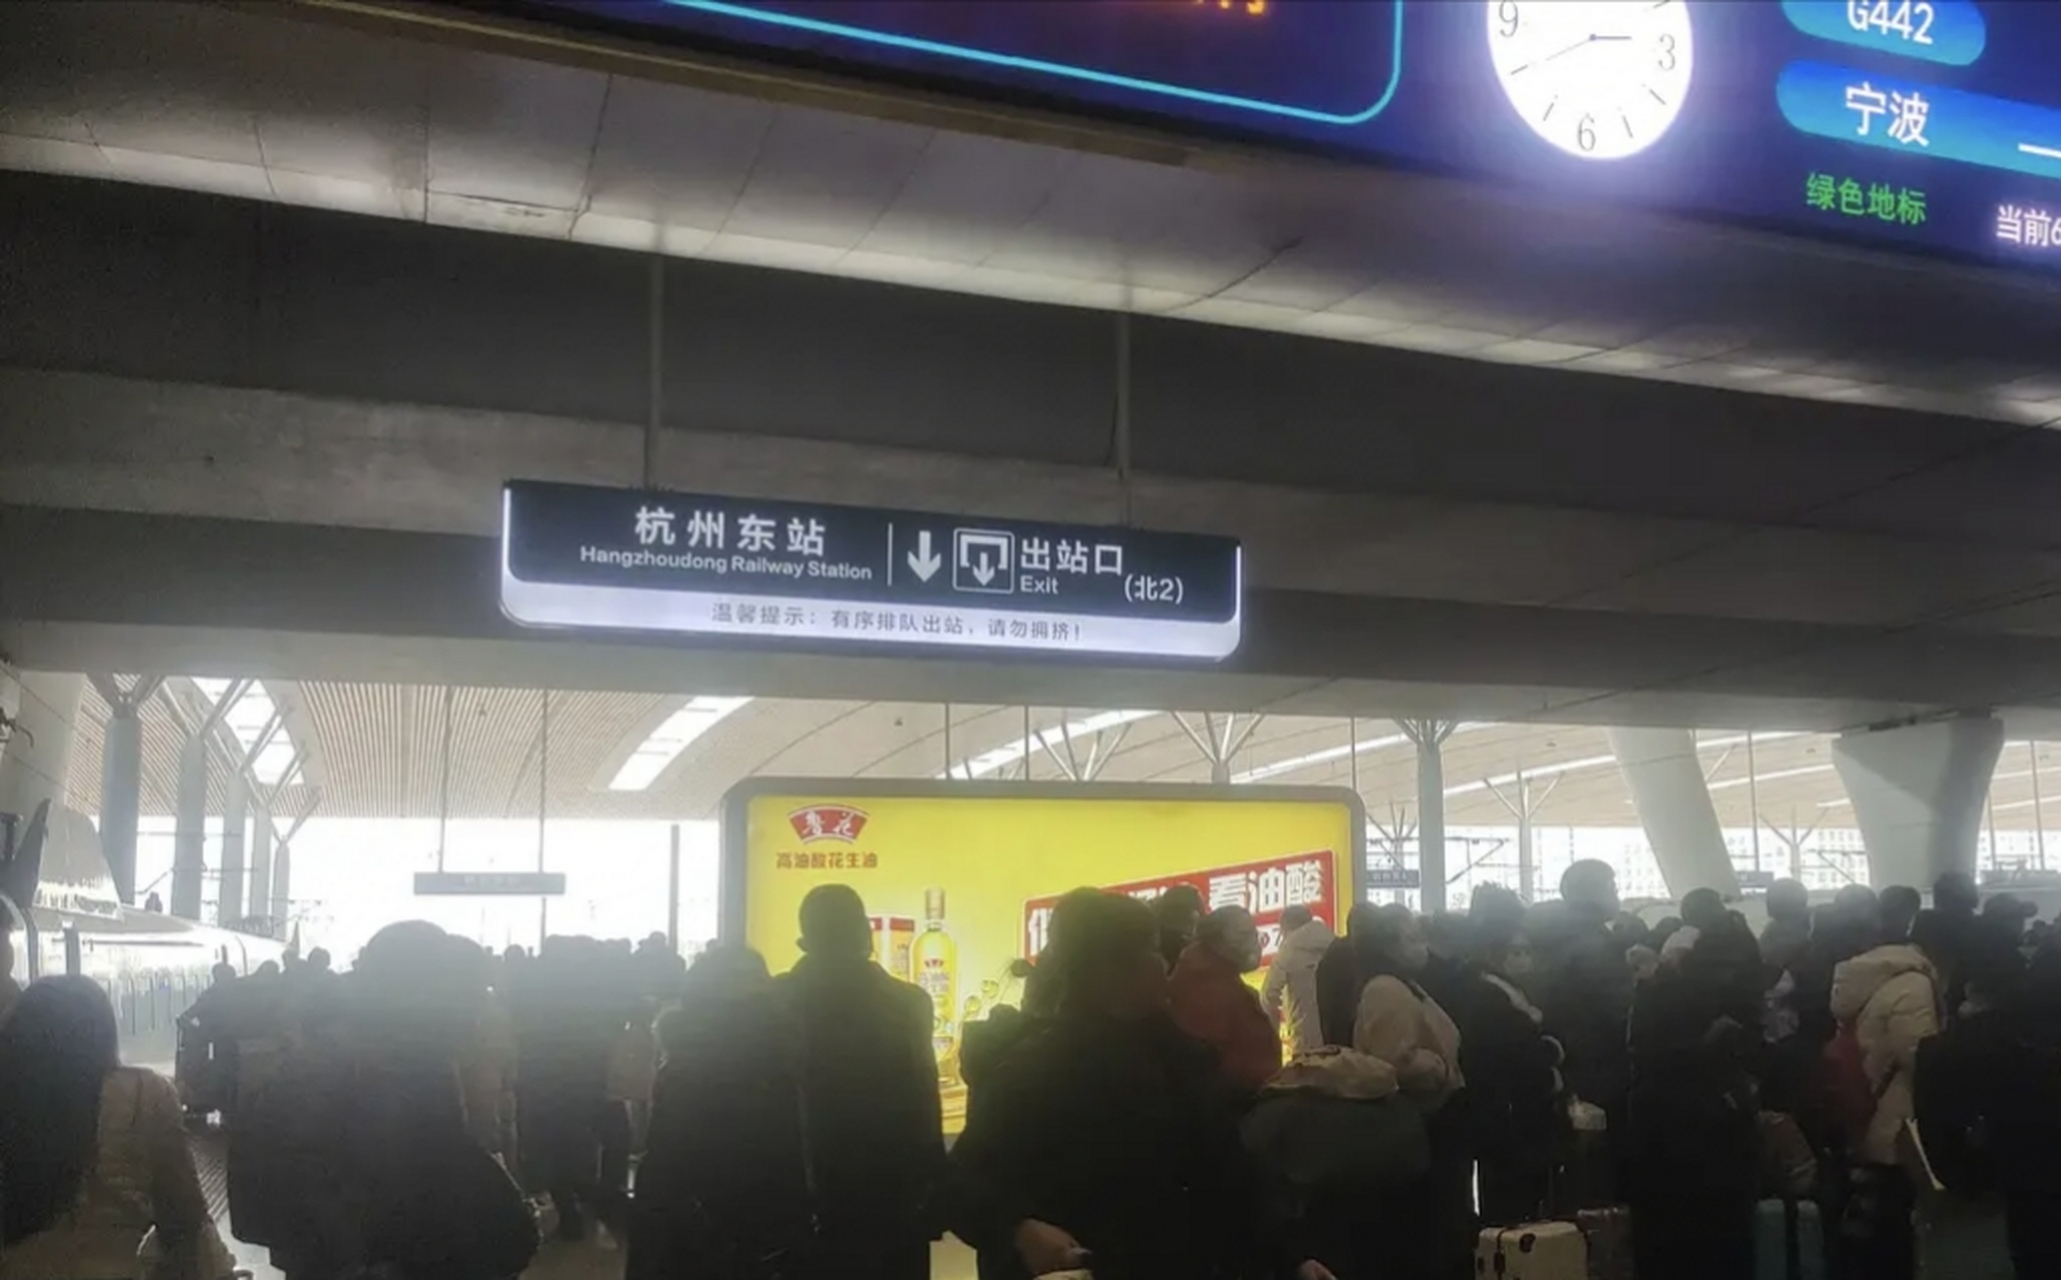 刚离开义乌,本以为义乌高铁站是浙江最大的火车站,没想到杭州东站还更